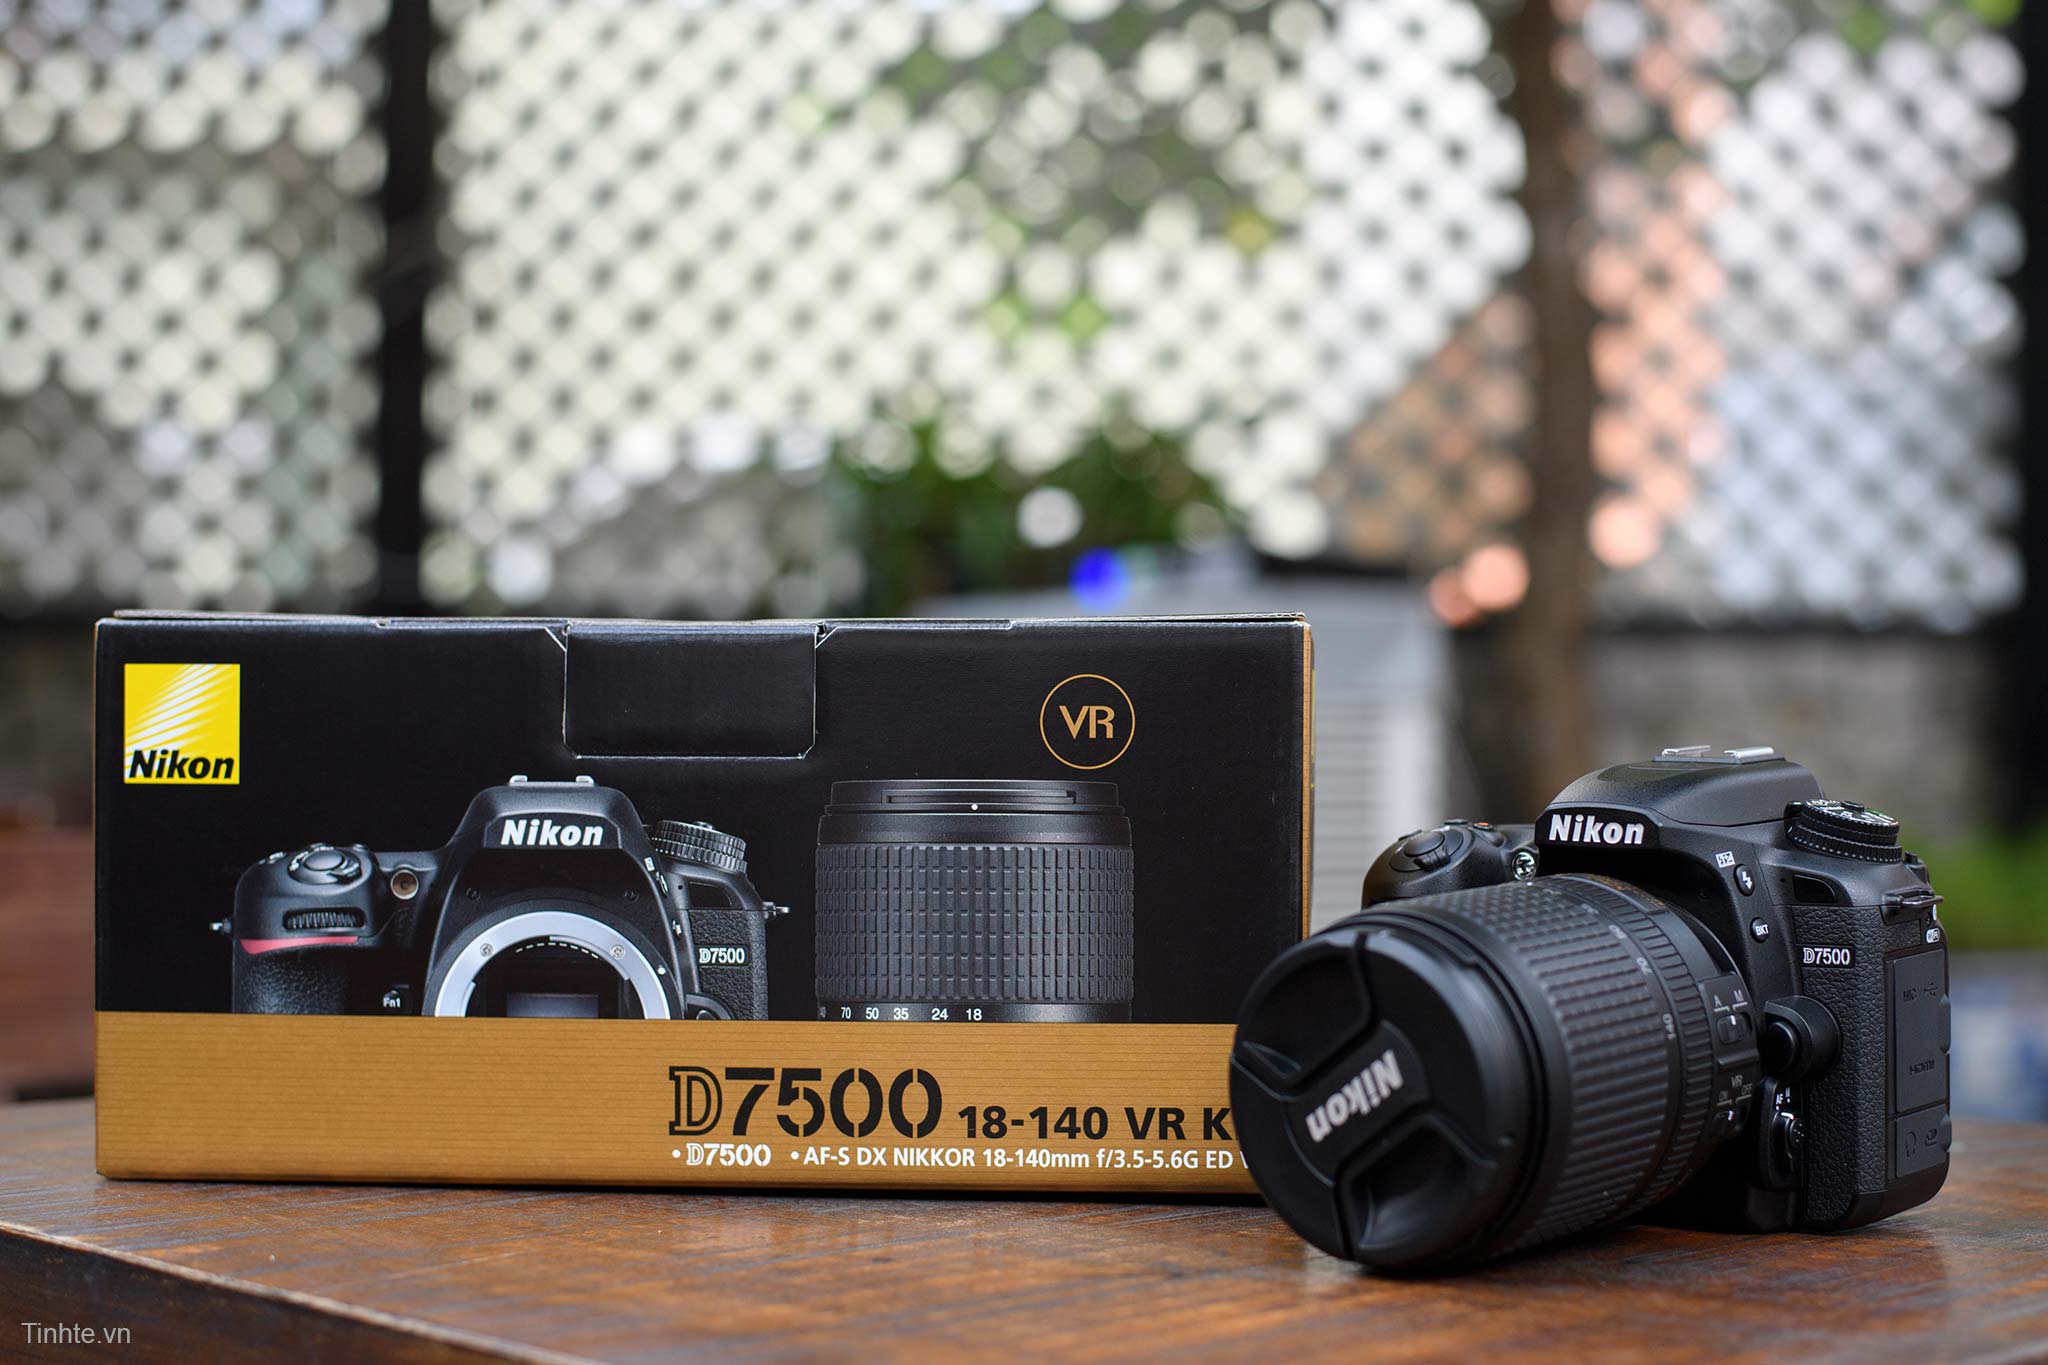 Trên tay và chụp thử máy ảnh Nikon D7500: Có nhiều cải tiến nhưng liệu có xứng đáng với giá tiền?